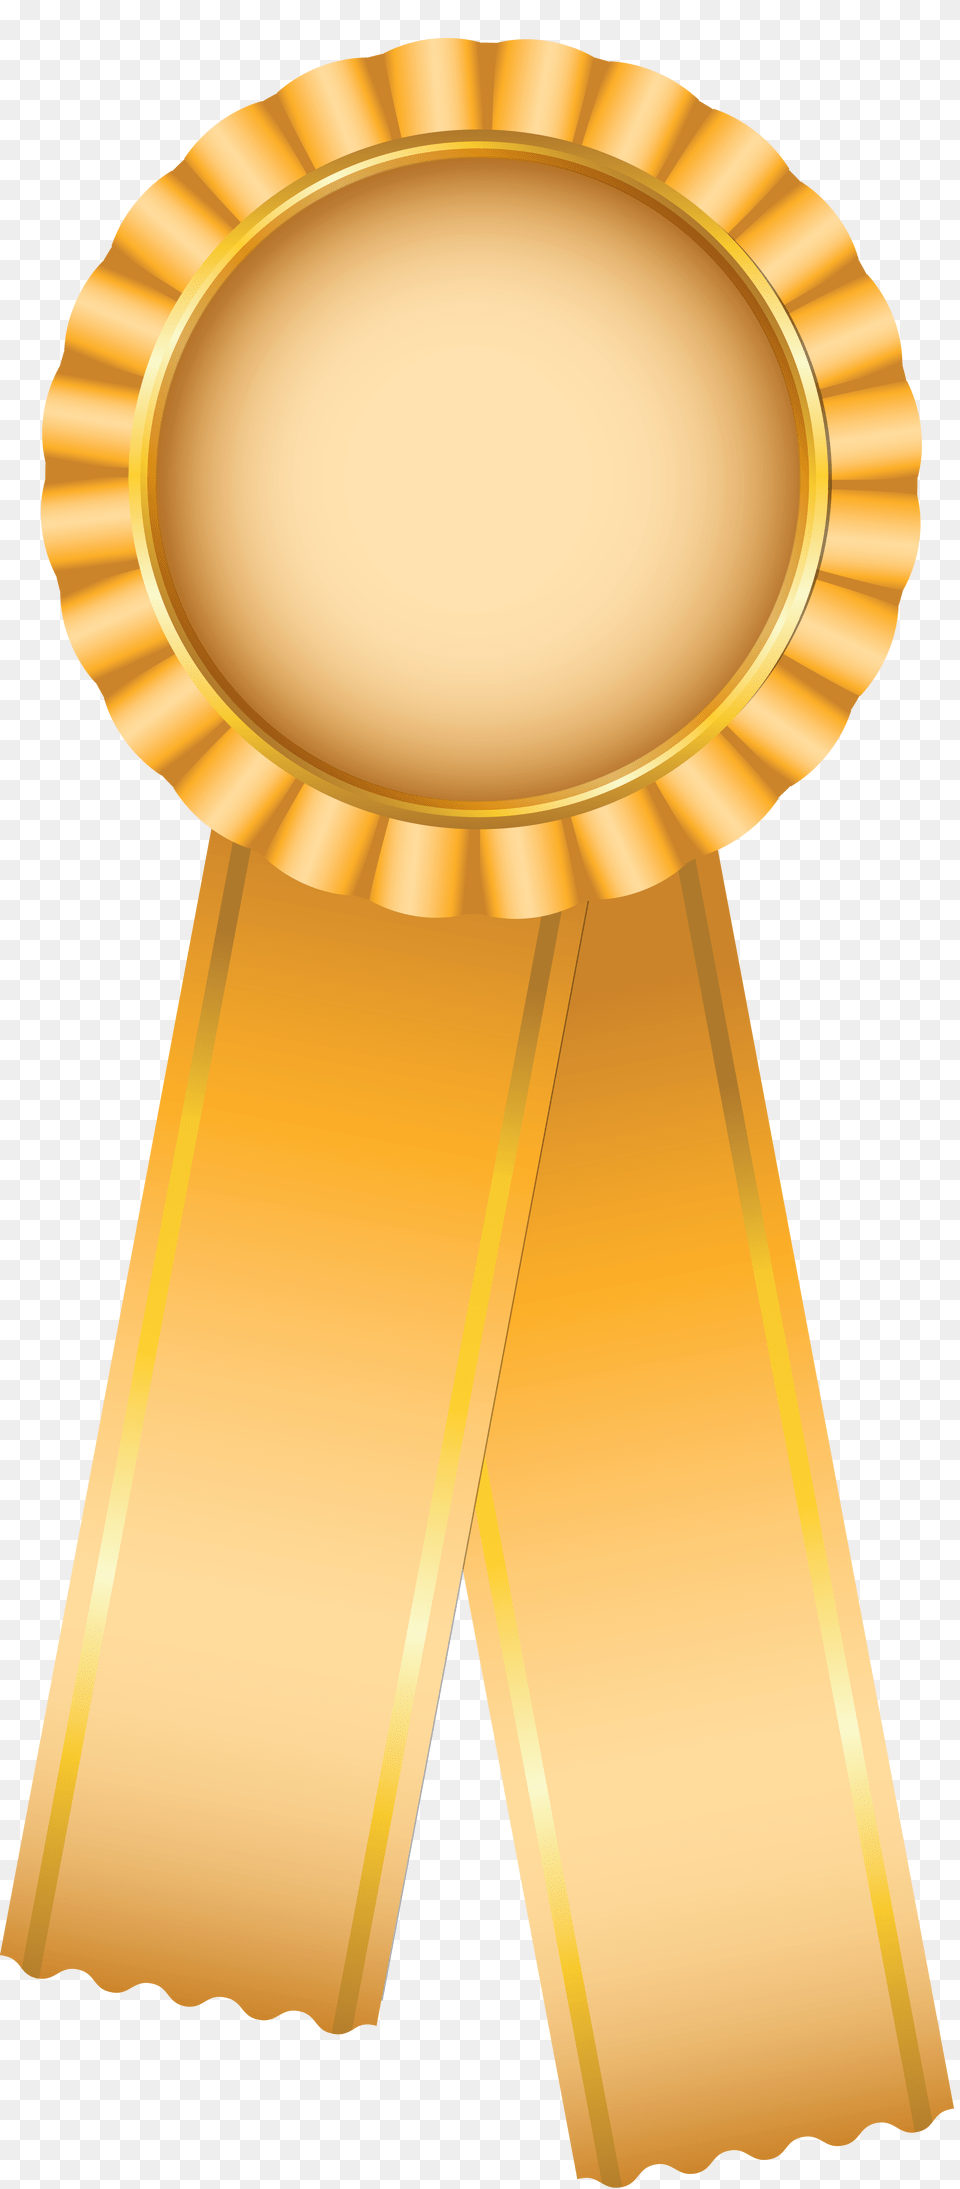 Award, Gold, Trophy, Logo Png Image